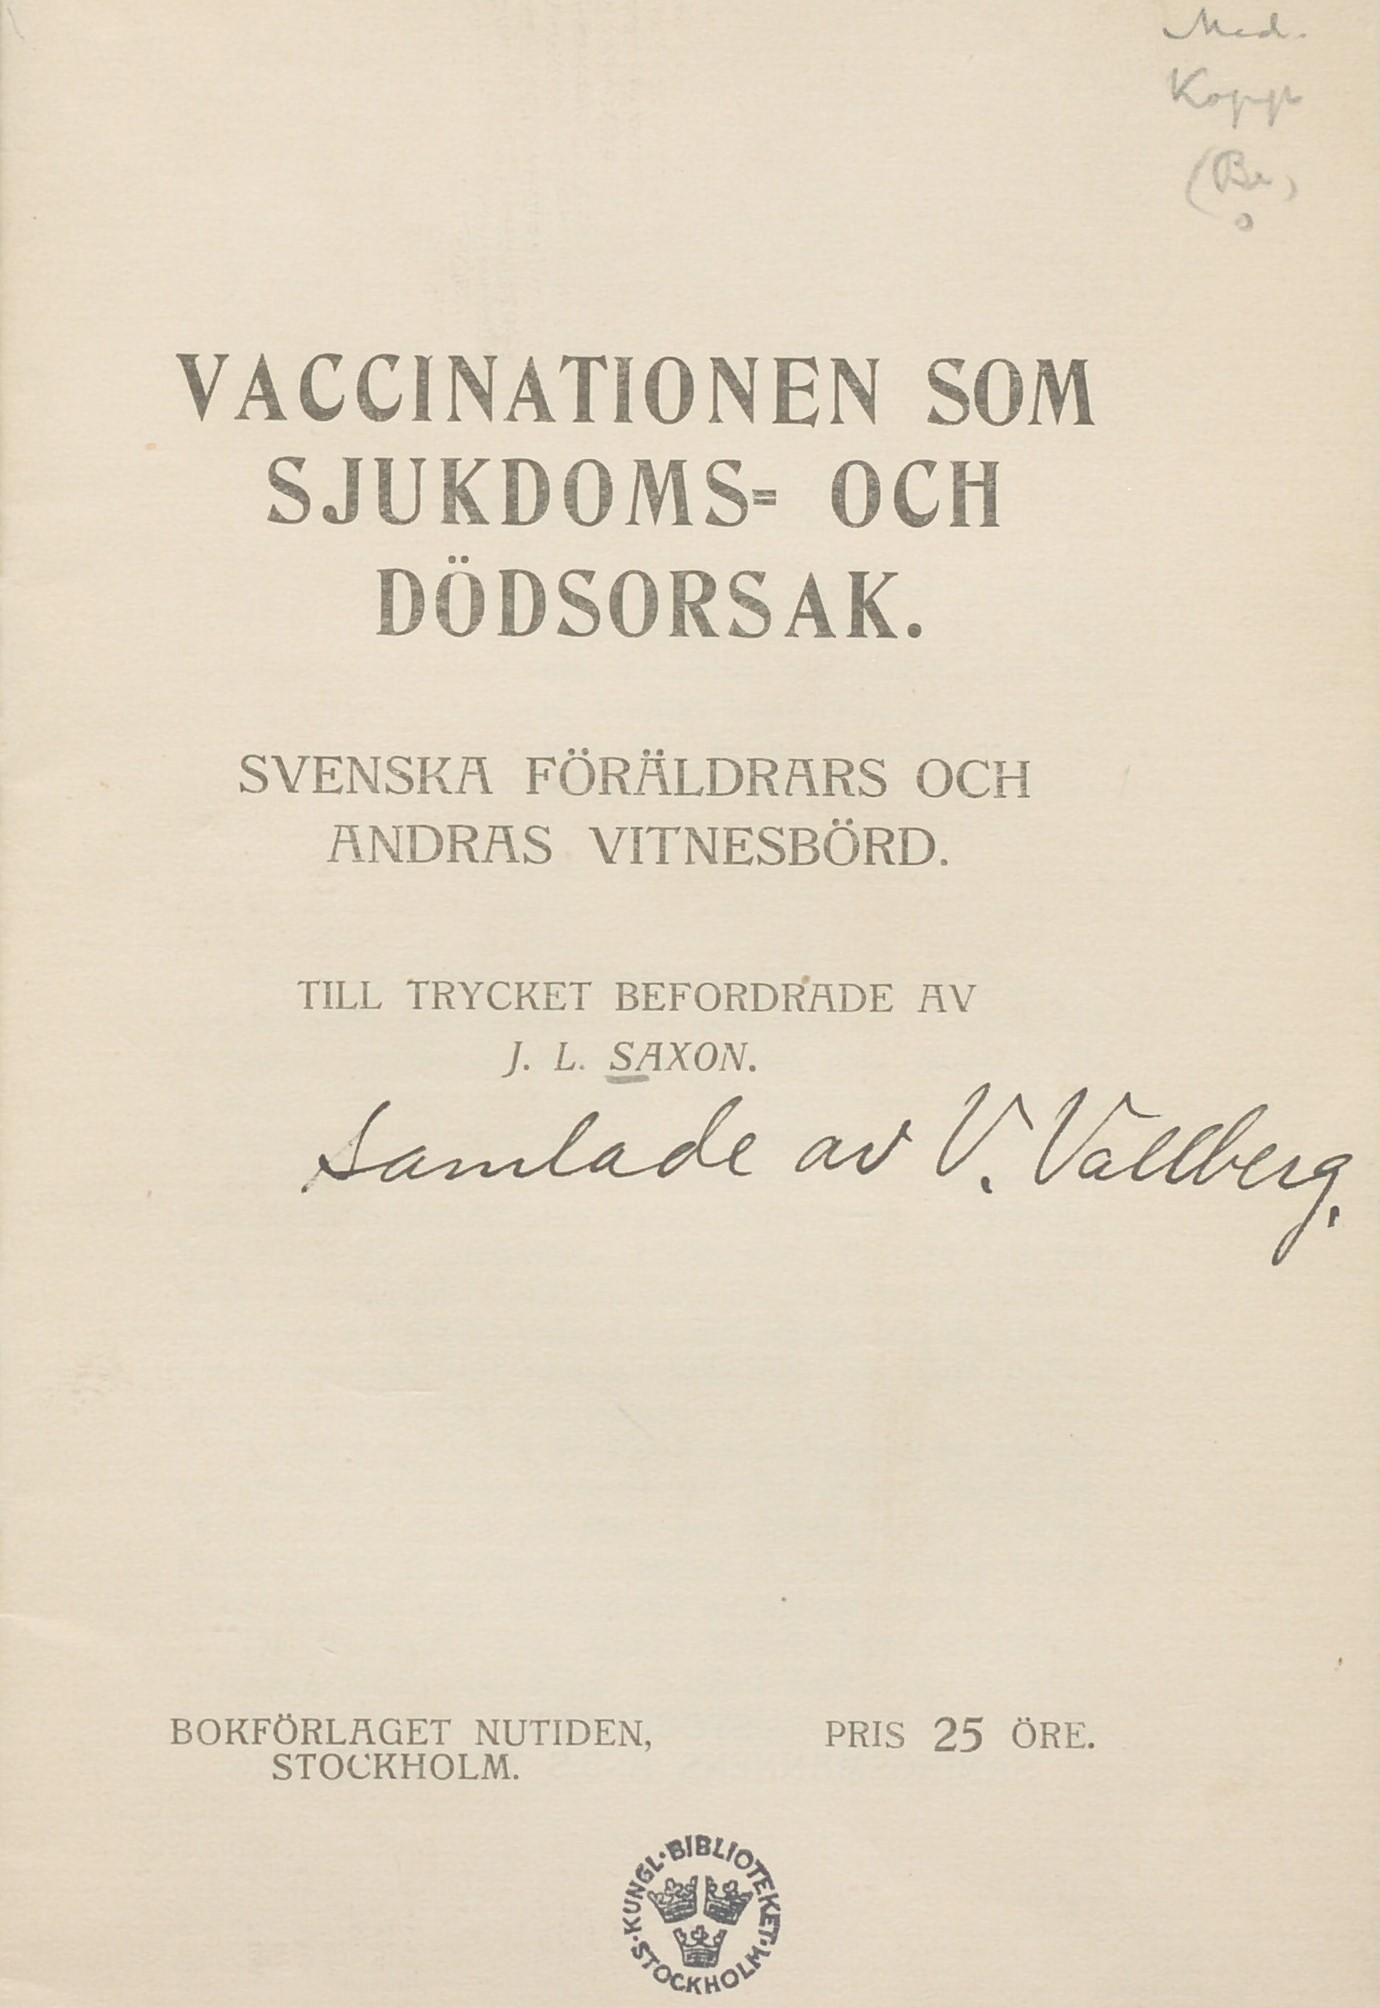 Titelsida. Text: Vaccinationen som sjukdoms- och dödsorsak.